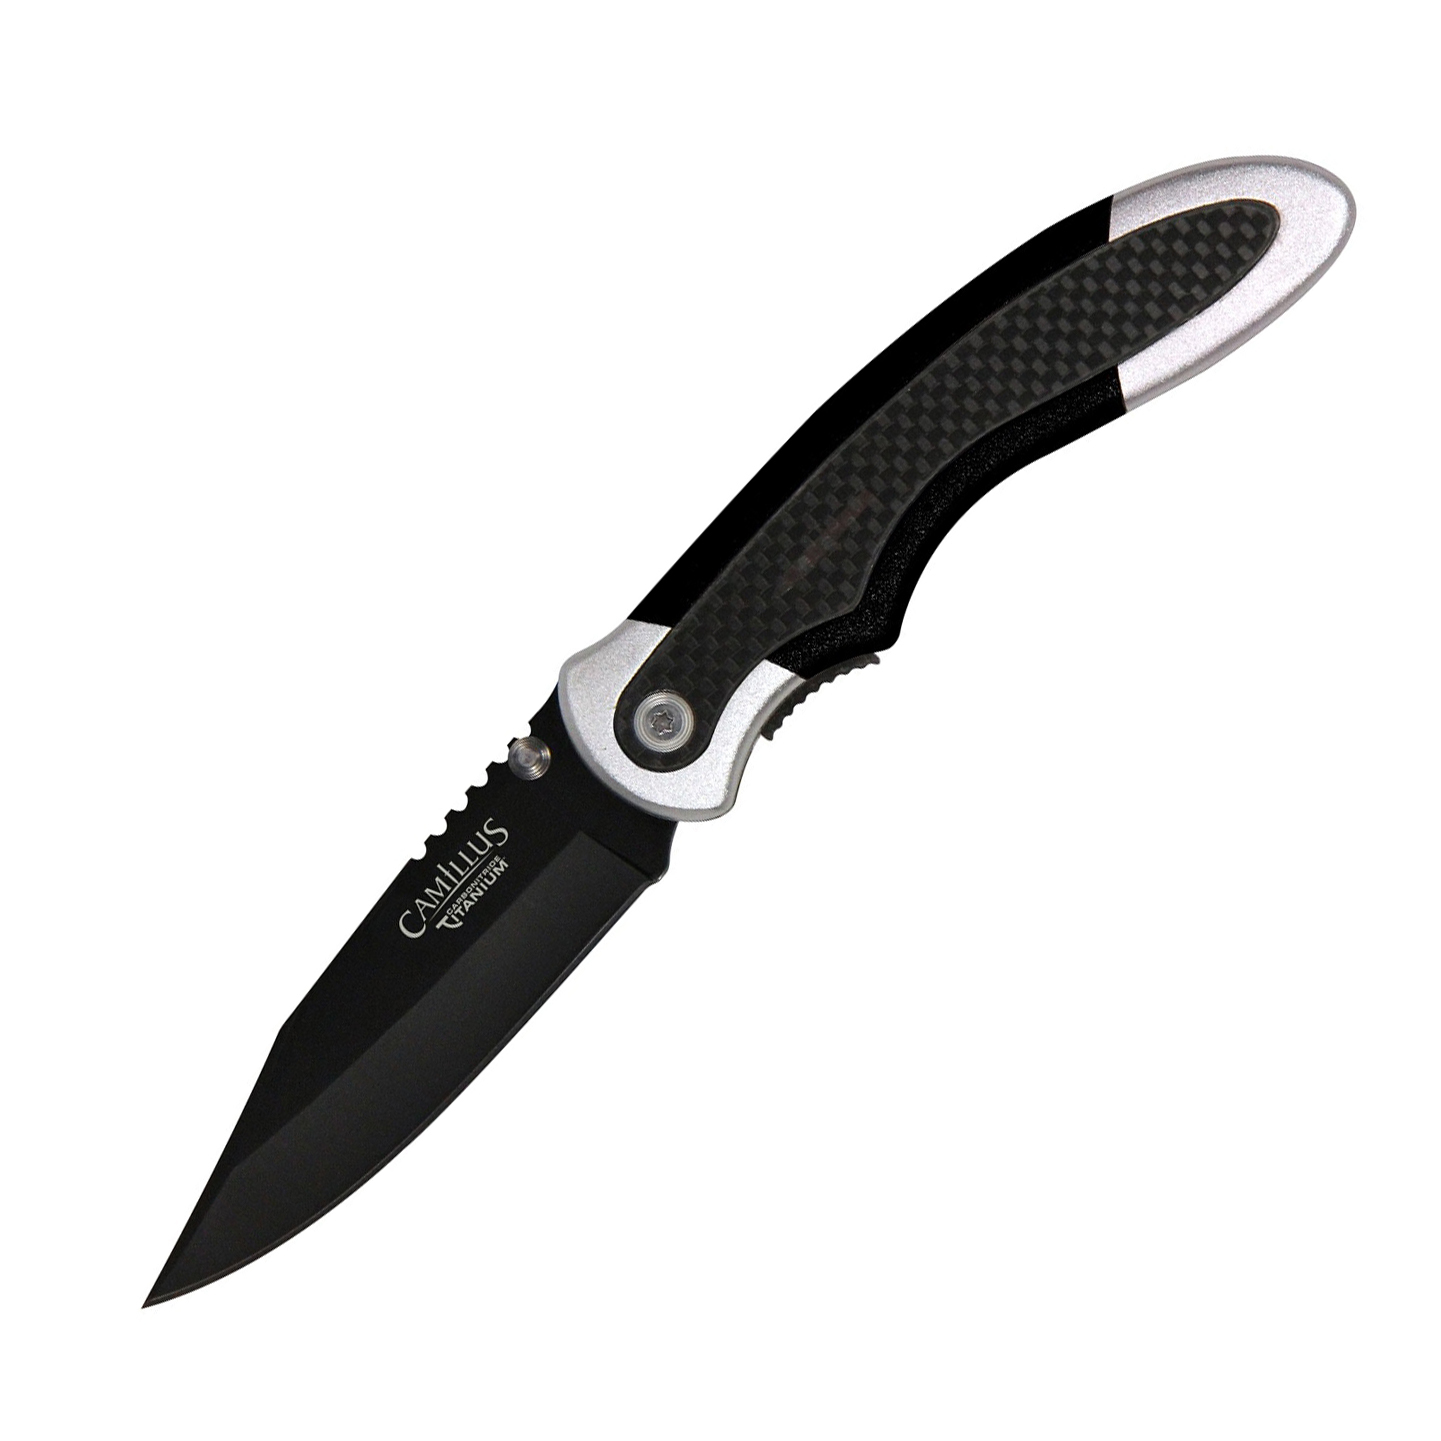 Нож складной Camillus Chameleon, сталь AUS-8, рукоять 6061 T-6 Aluminium, чёрный